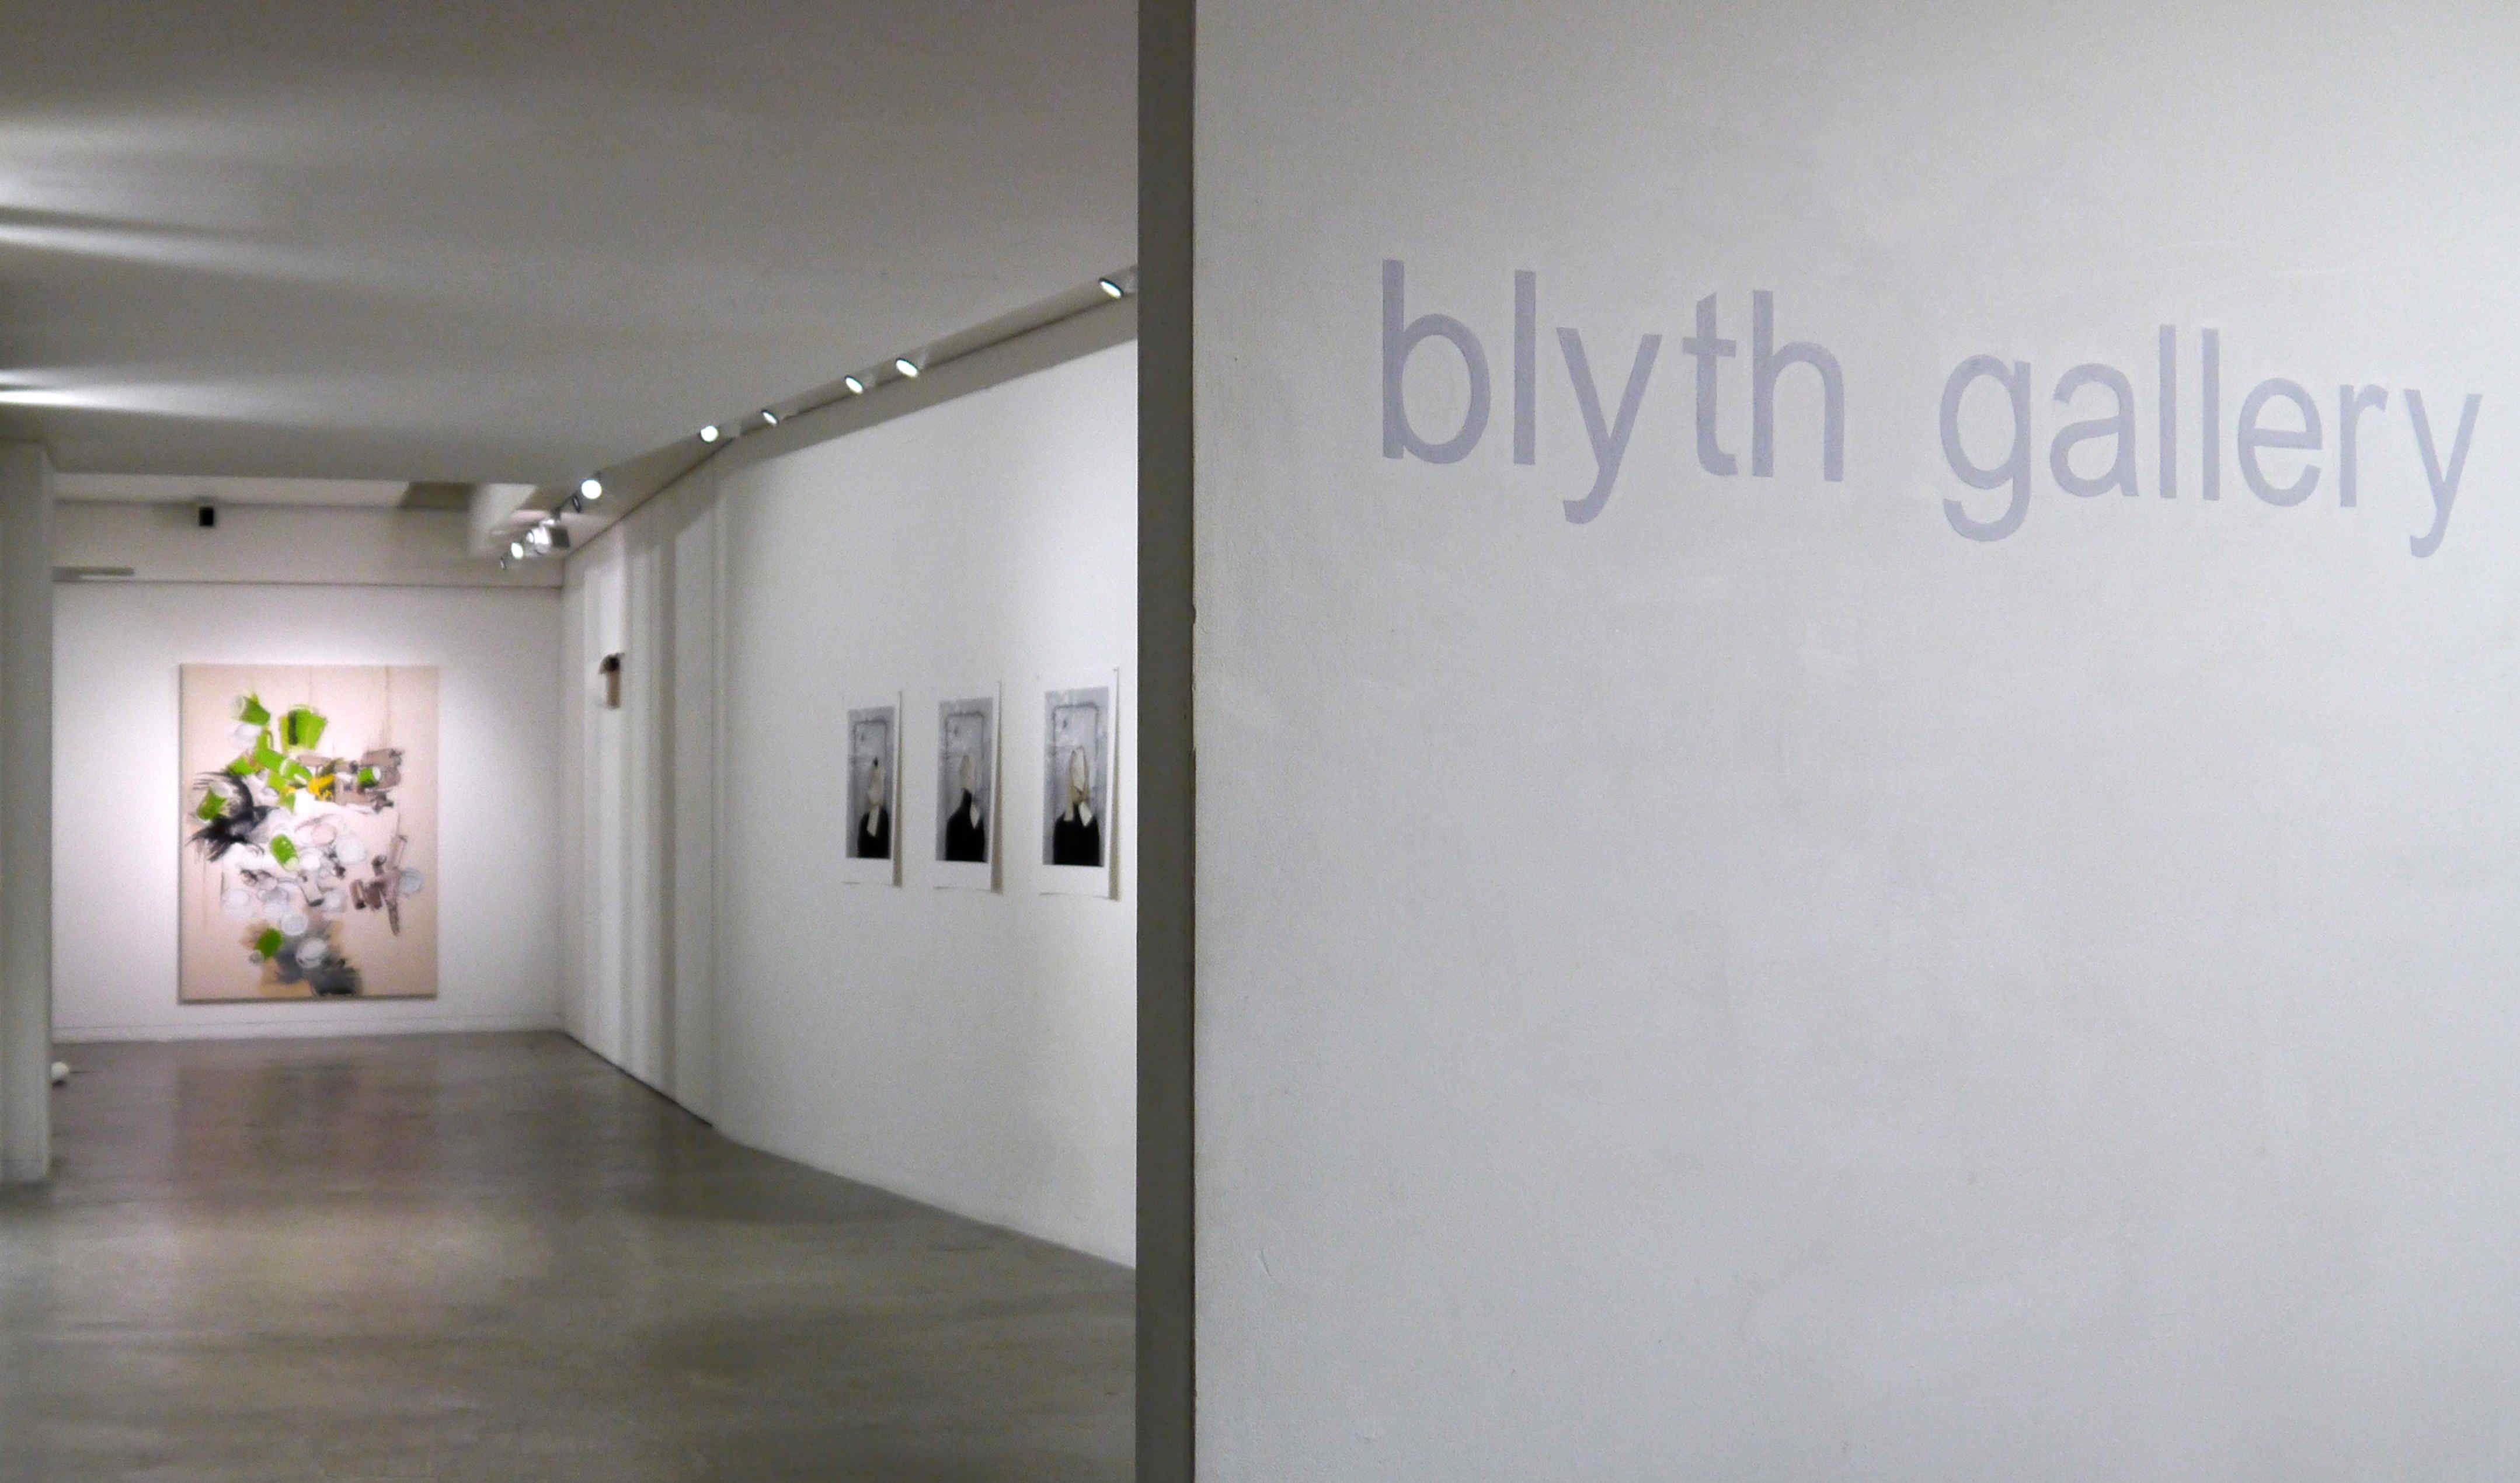 Blyth Gallery installation view